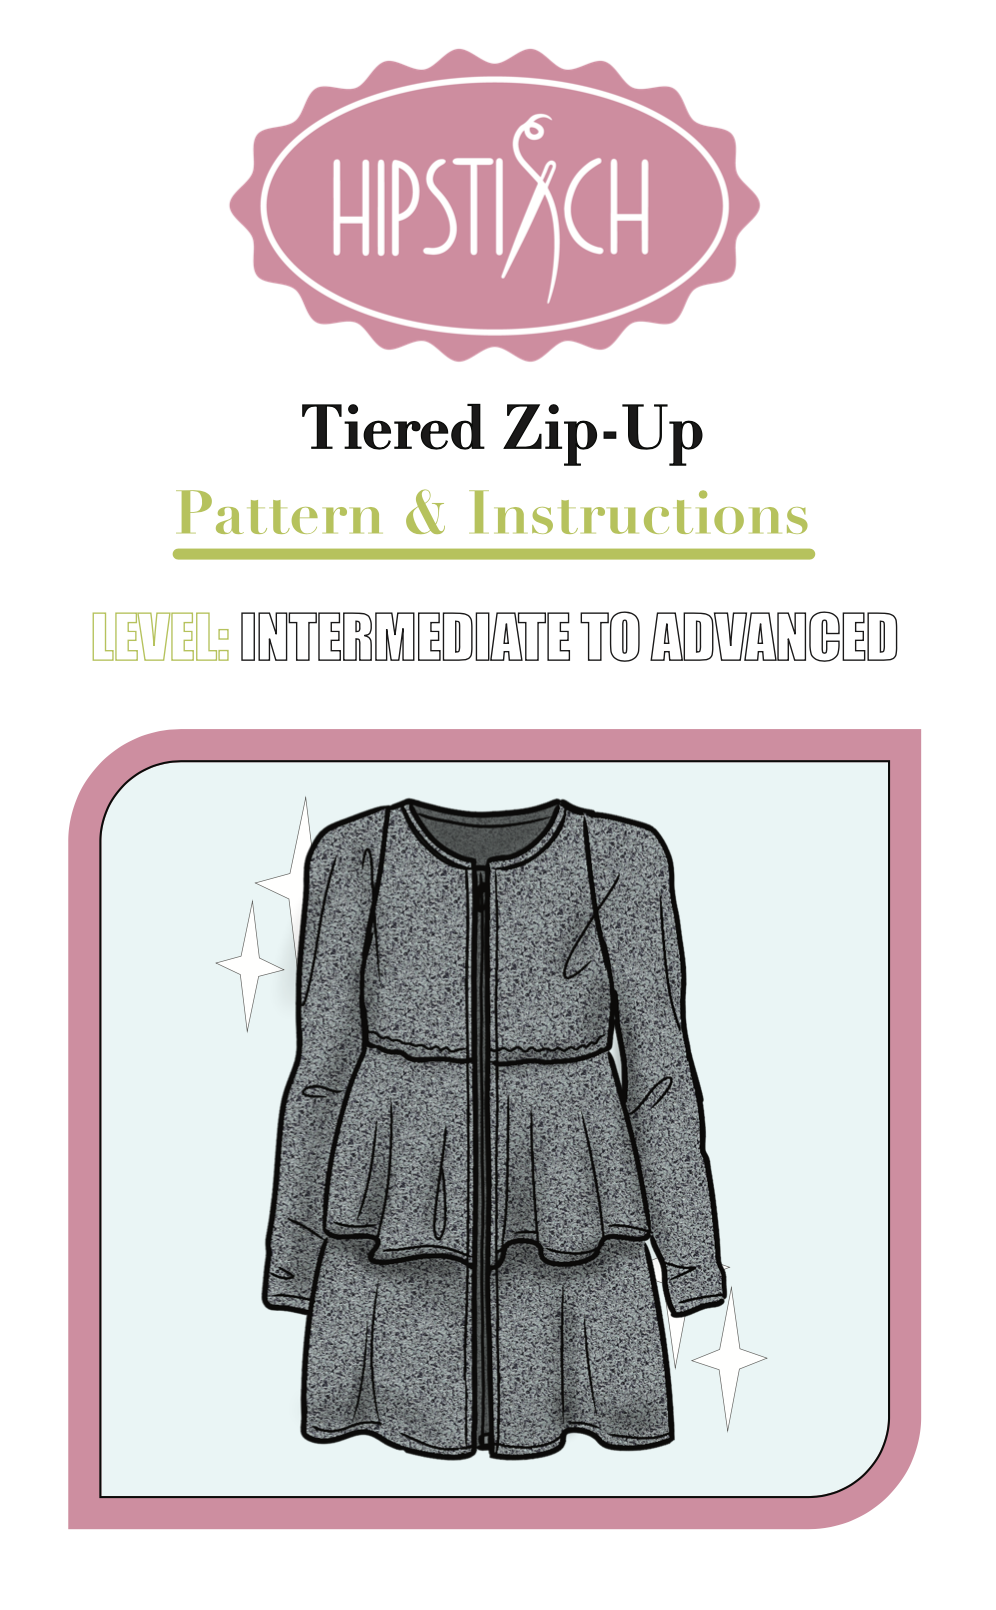 Tiered Zip-Up Pattern